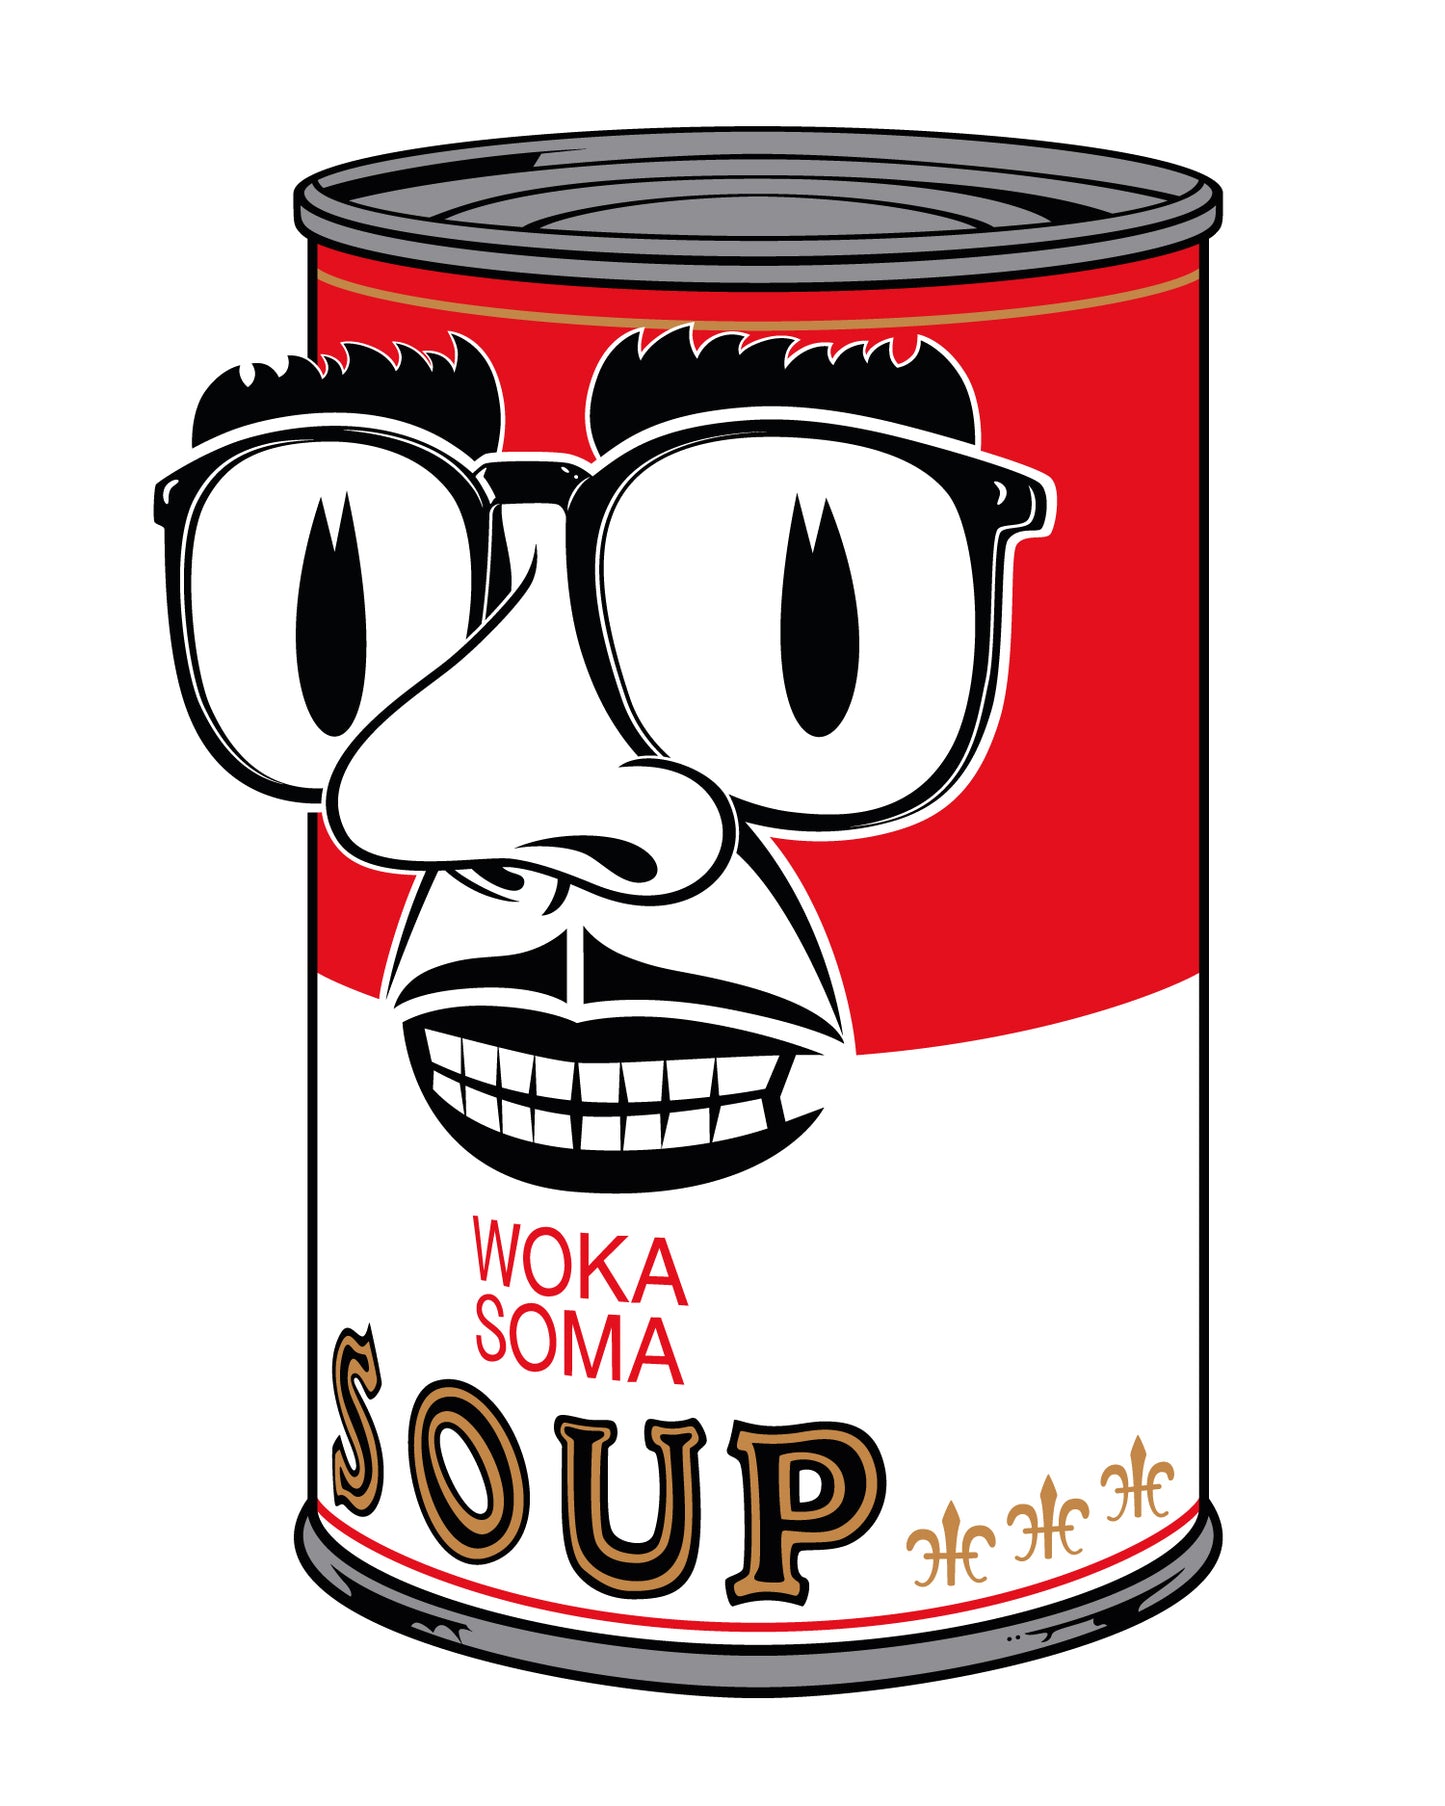 WOKASOMA Soup (Shirt)